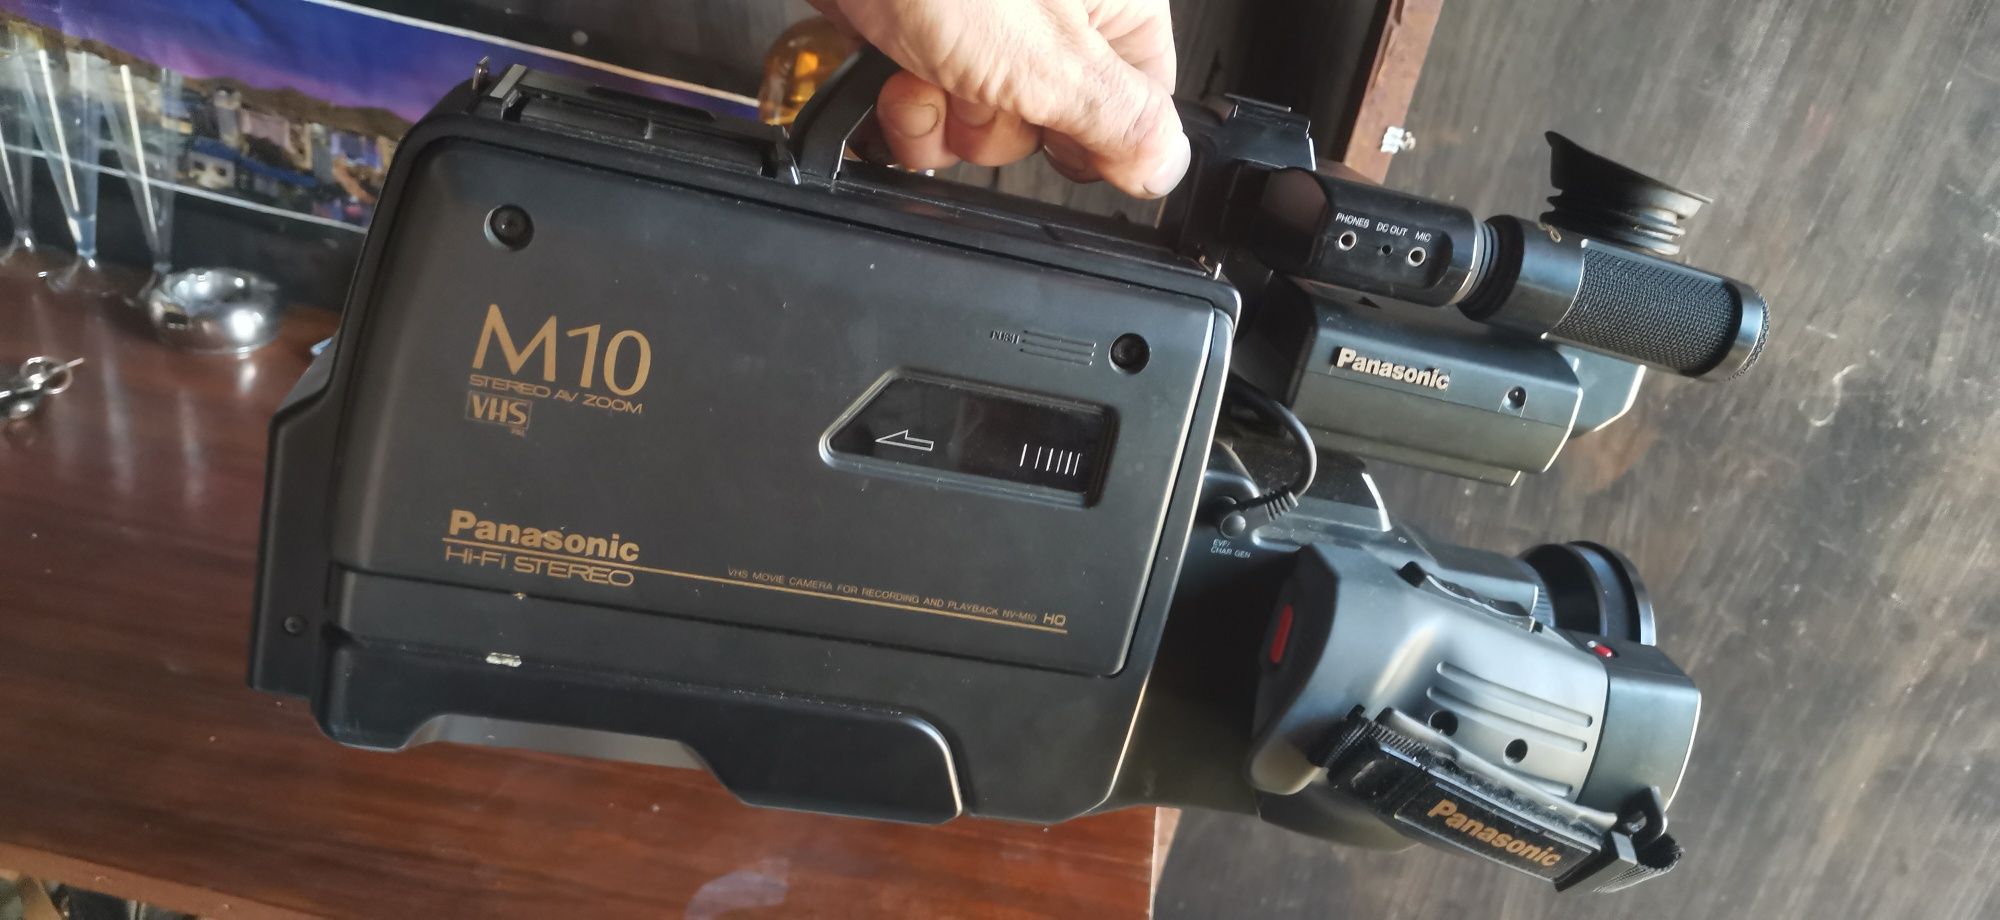 Panasonic NV-M10E0 видеокамера ра vhs